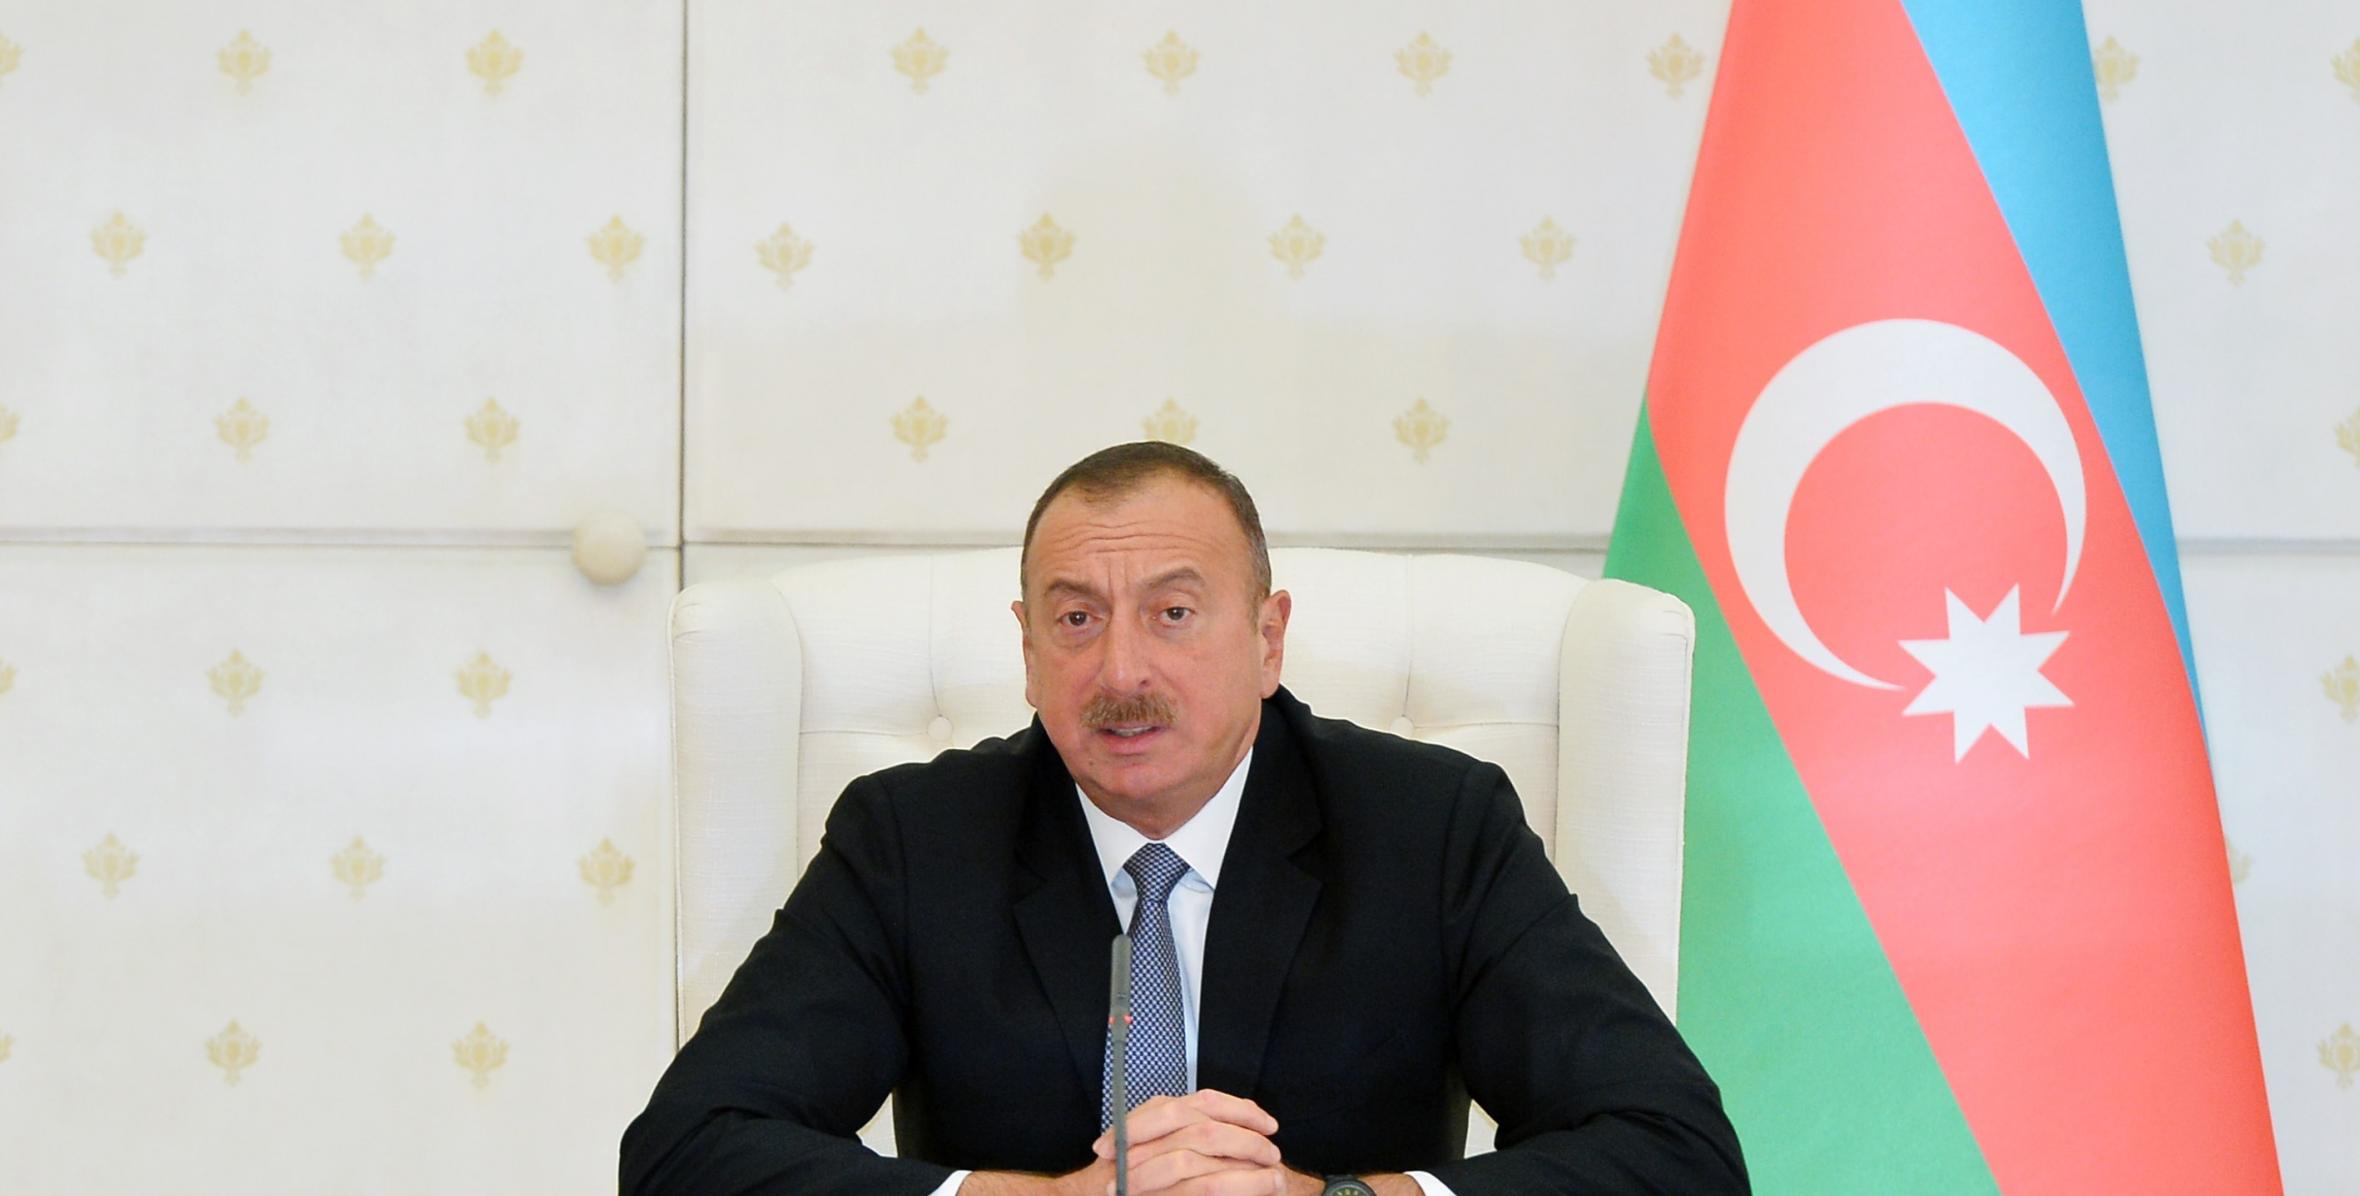 Заключительная речь Ильхама Алиева на заседании Кабинета Министров, посвященное итогам социально-экономического развития в 2016 году и предстоящим задачам